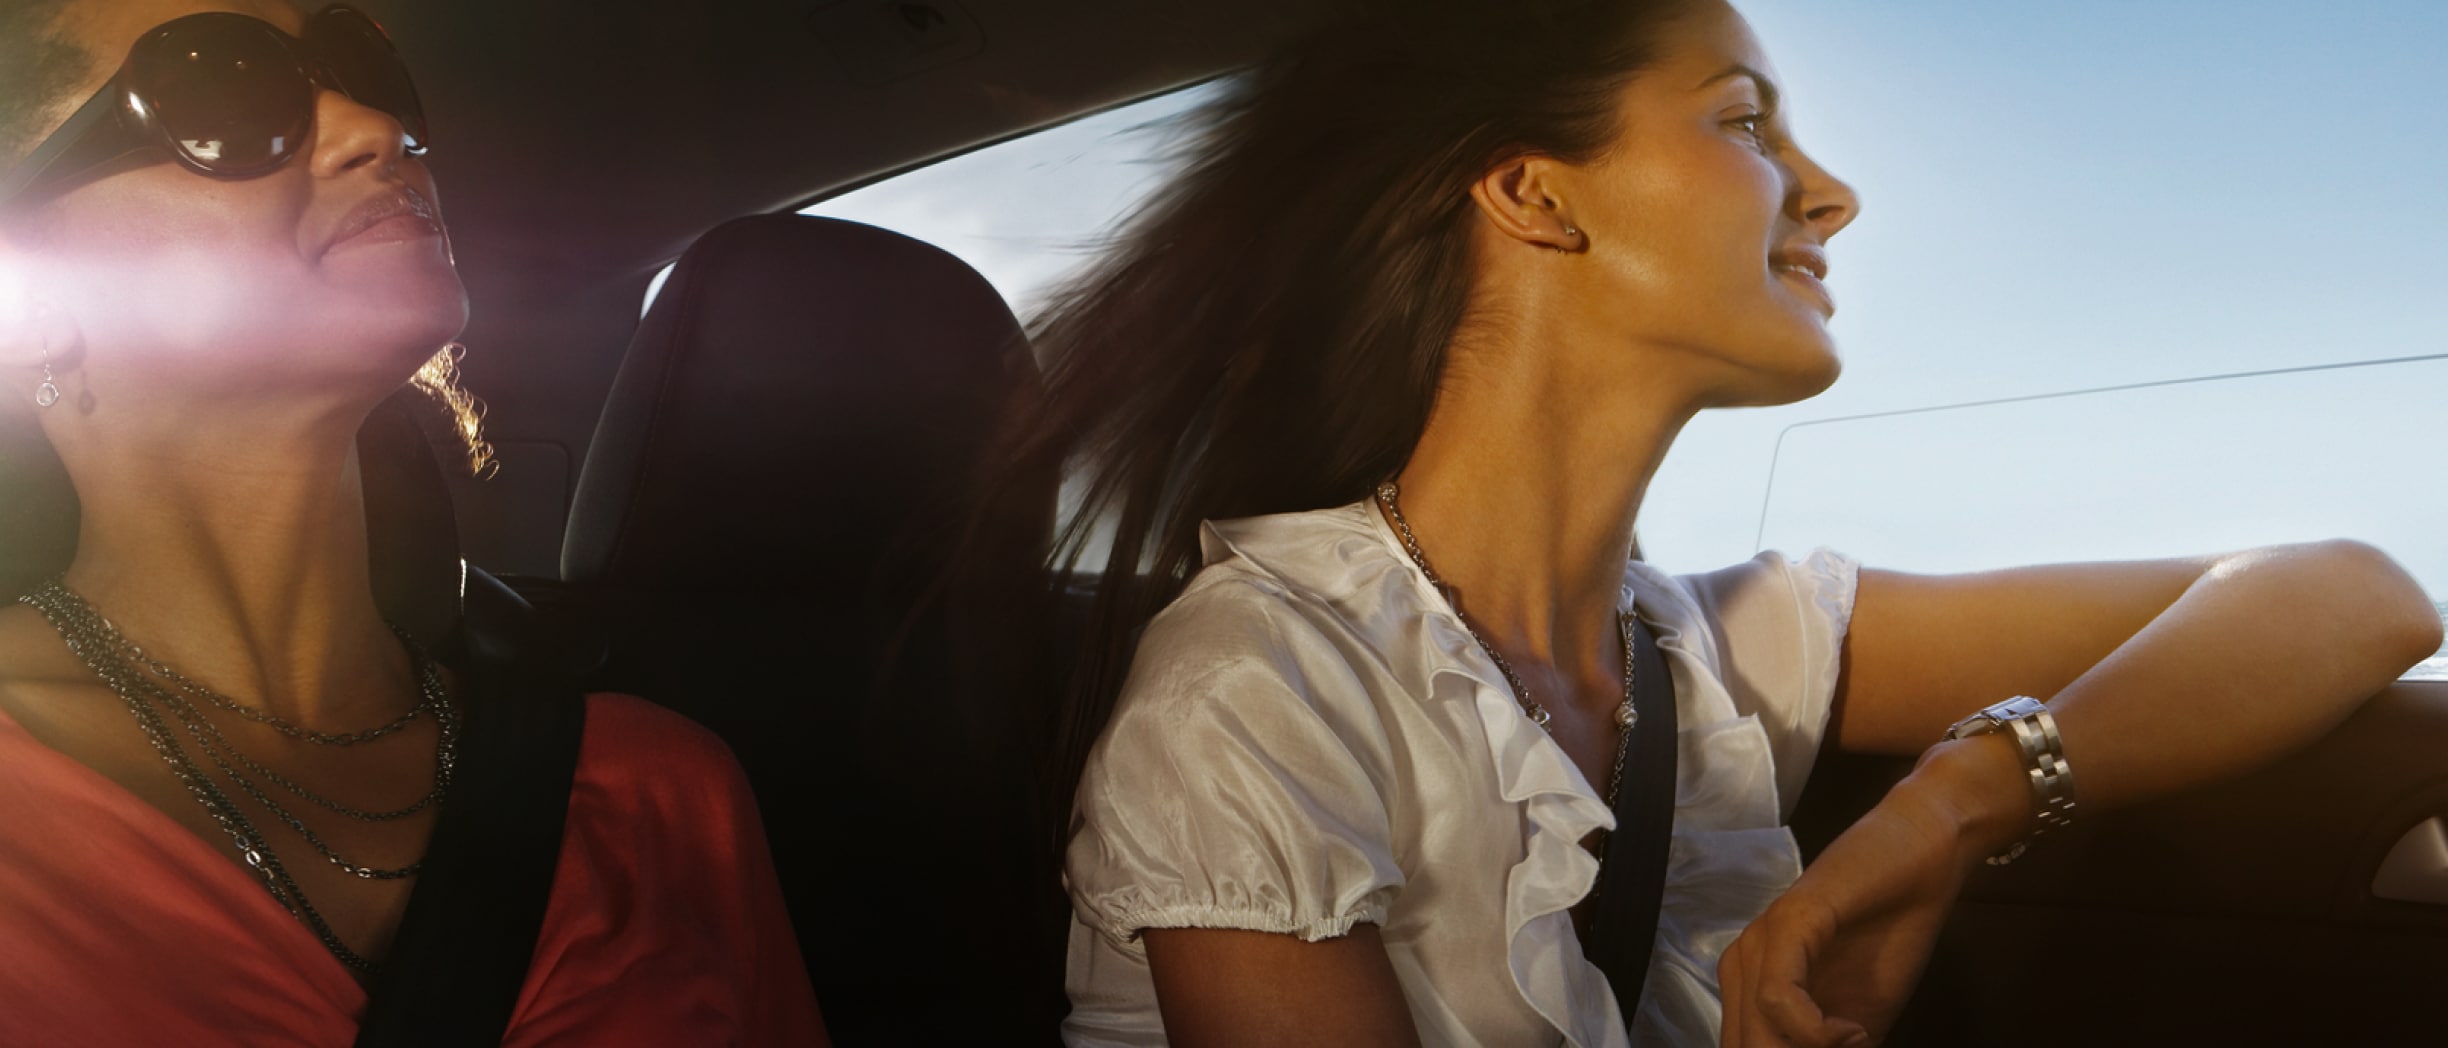 Two women in a car enjoying a drive